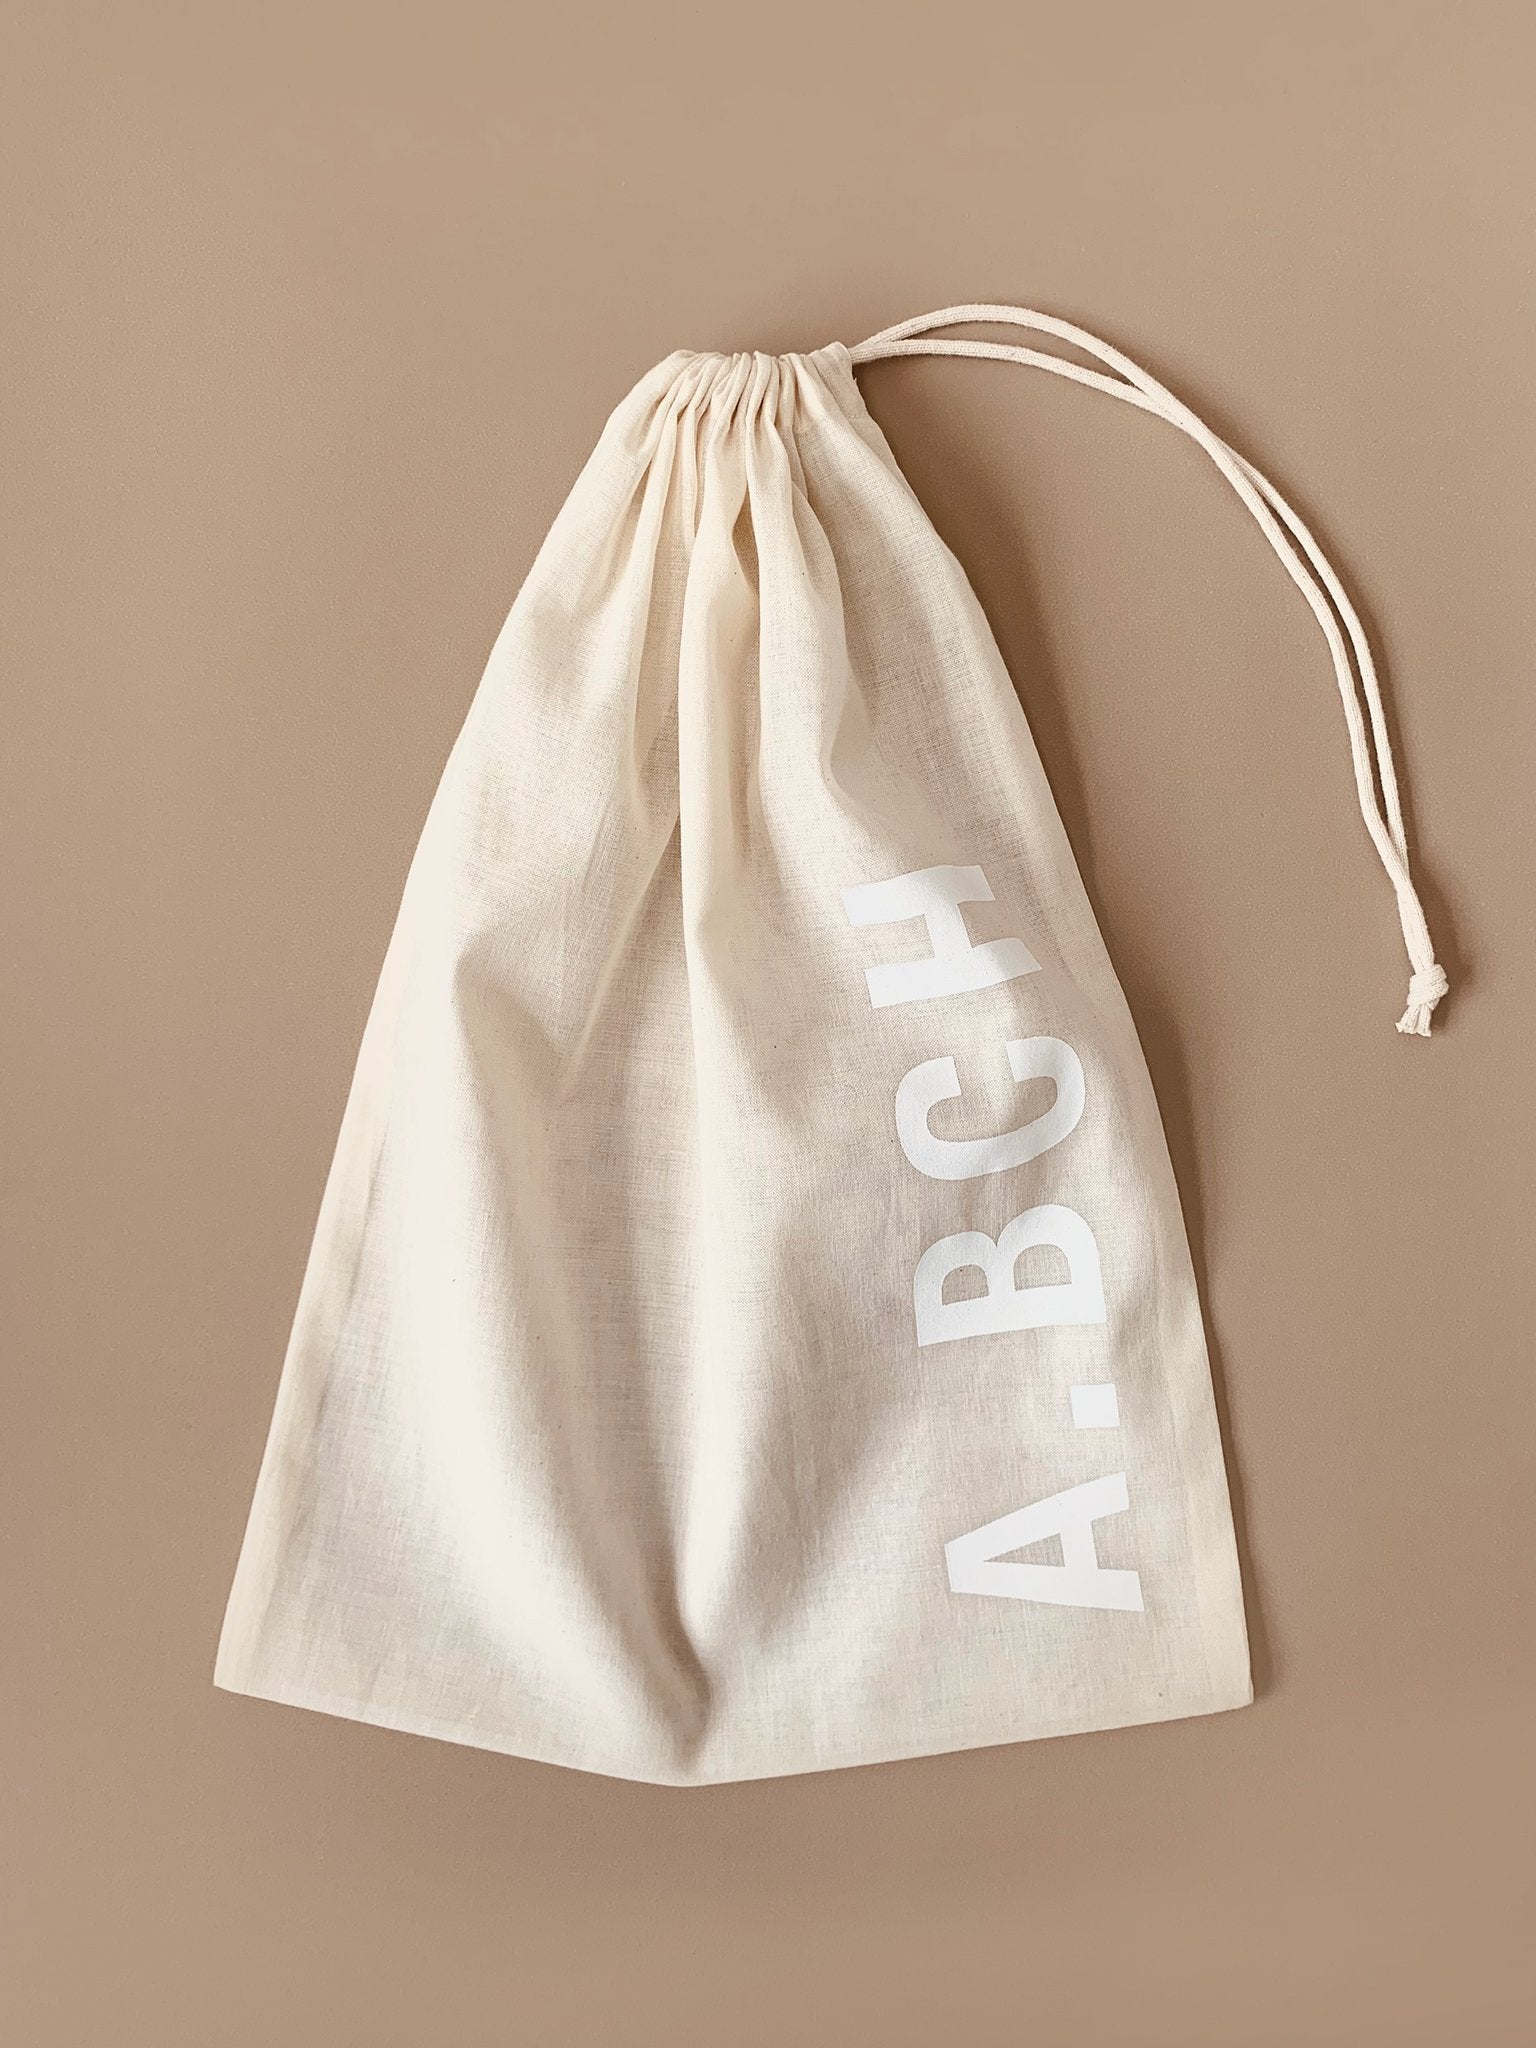 A.BCH Undyed Delicates Wash Bag